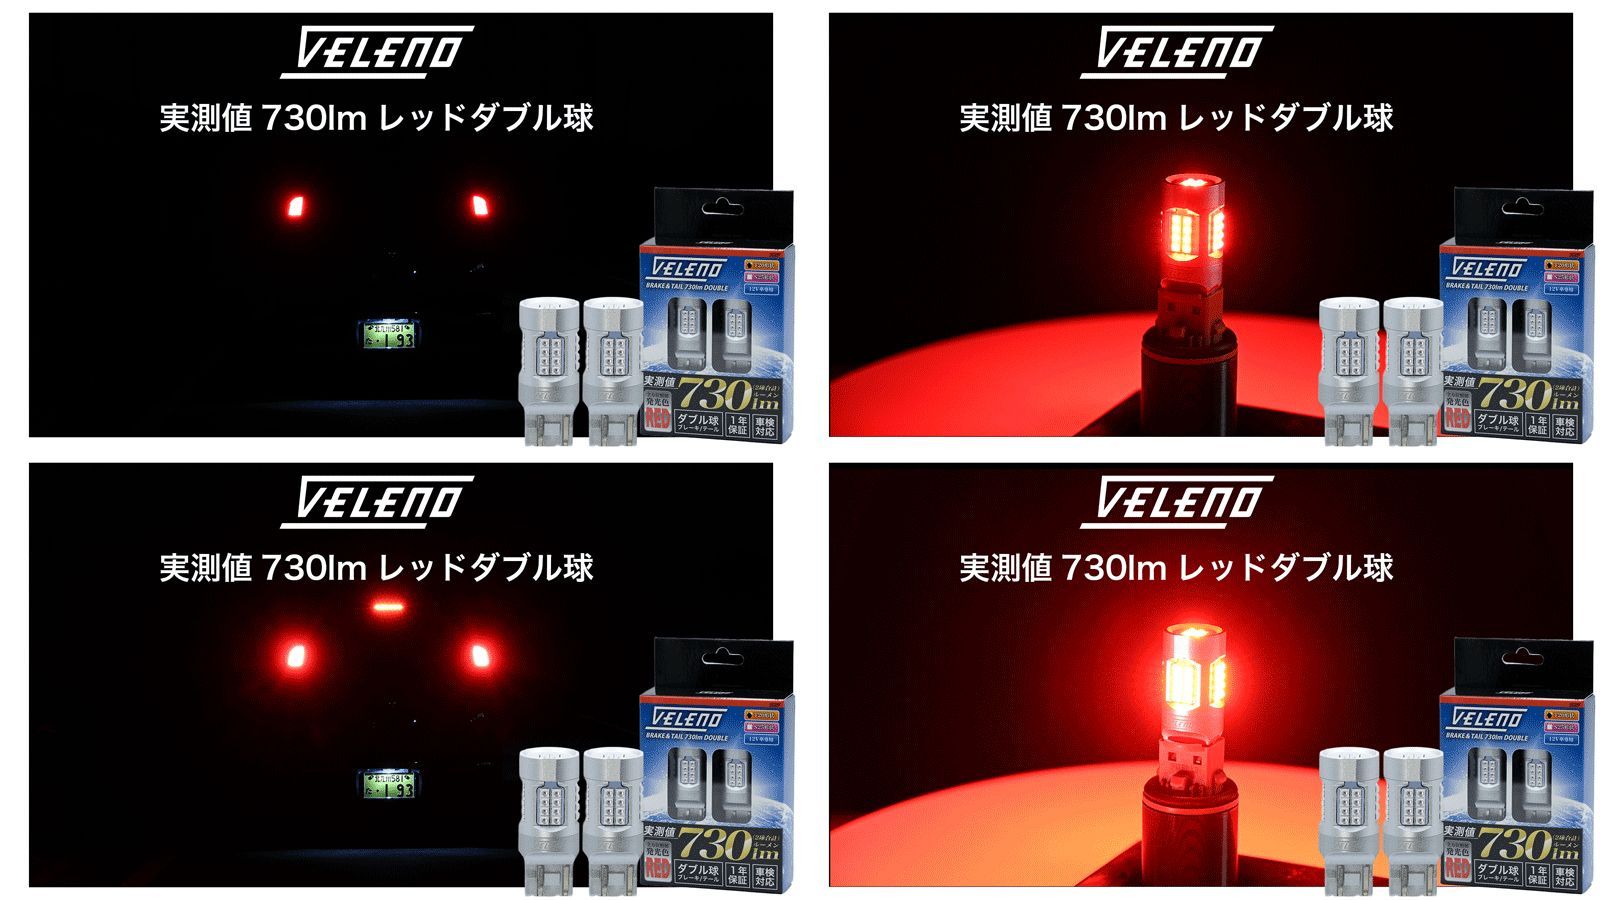 VELENO LED ブレーキランプ 730lm ダブル ブレーキ レッド 赤 ダブル球 ストップランプ ヴェレーノ ベレーノ テールランプ テール  車検対応 T20 / S25 全方位照射 2球セット 車 カスタム 車用 - メルカリ